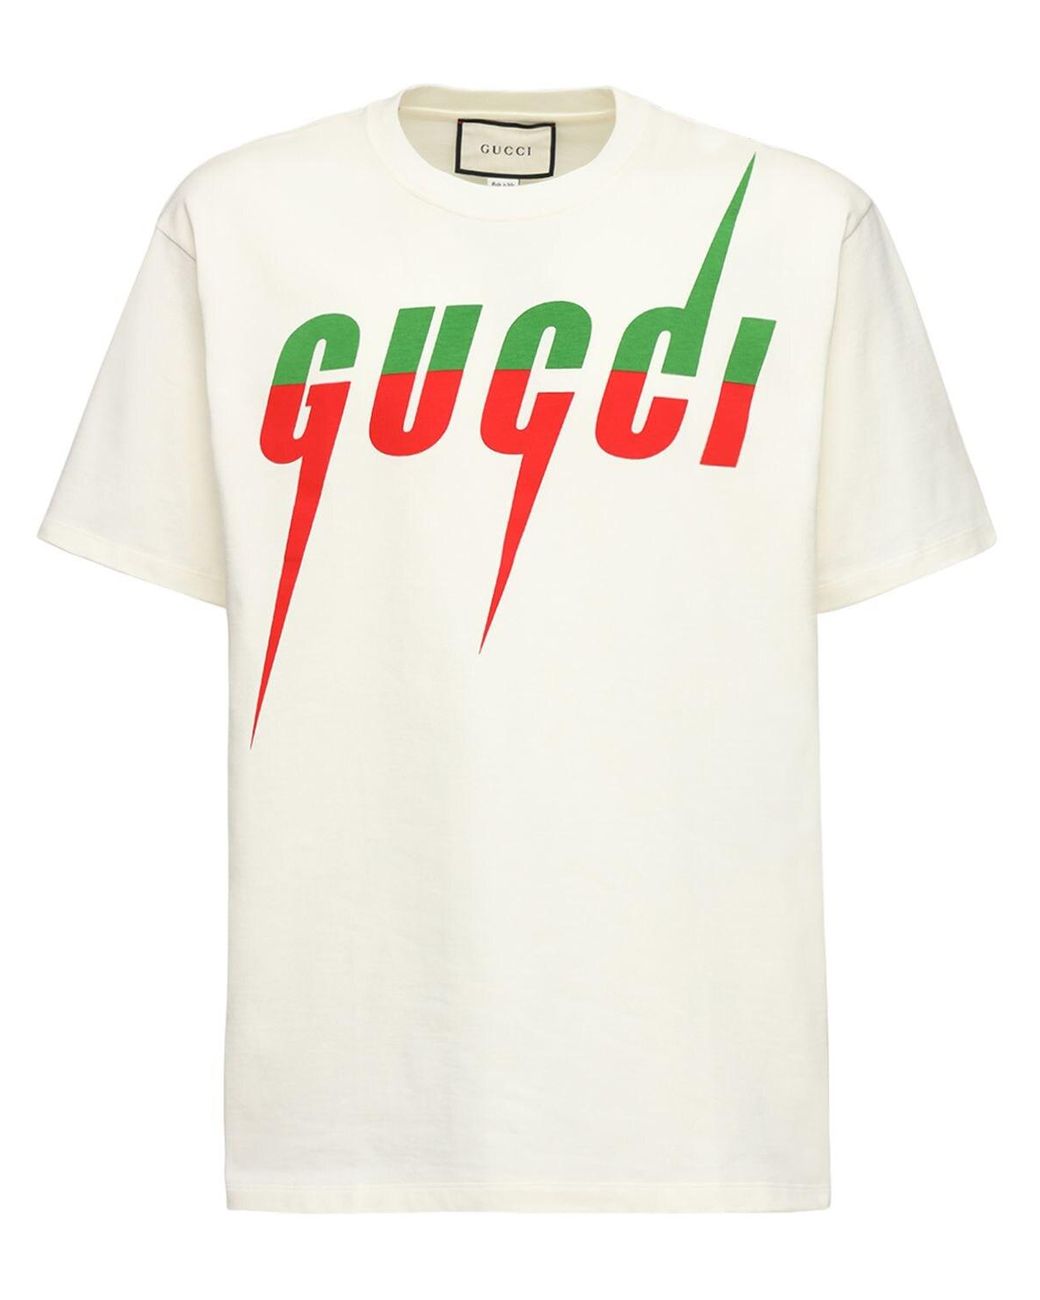 メンズ Gucci オーバーサイズコットンジャージーtシャツ | Lyst